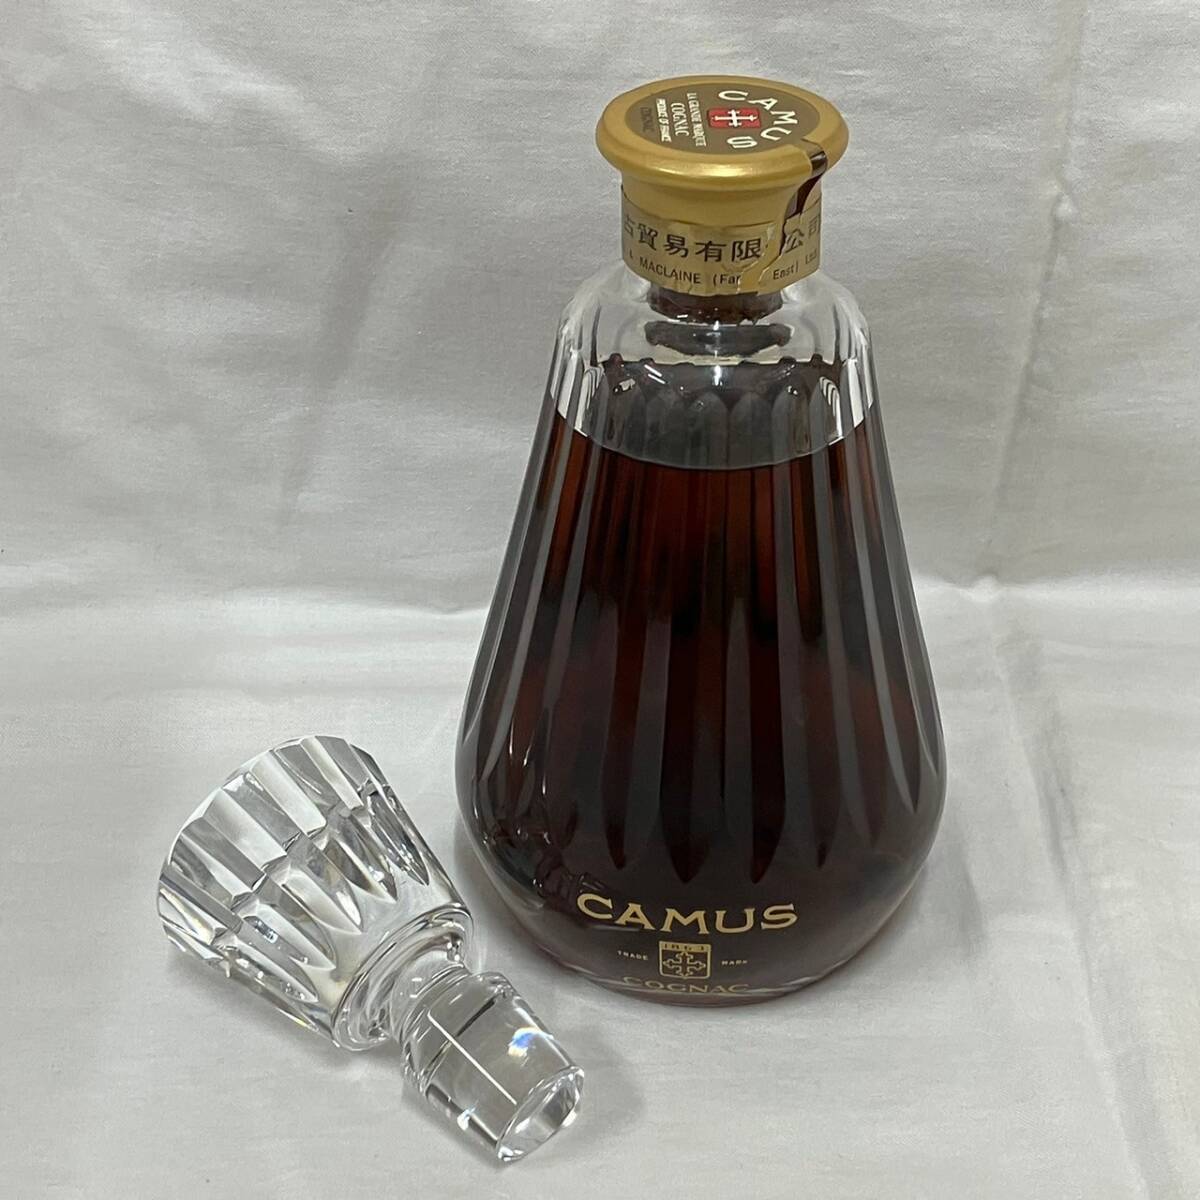 5015-1A 未開栓 CAMUS カミュ カラフェ バカラボトル コニャック ブランデー 古酒の画像1